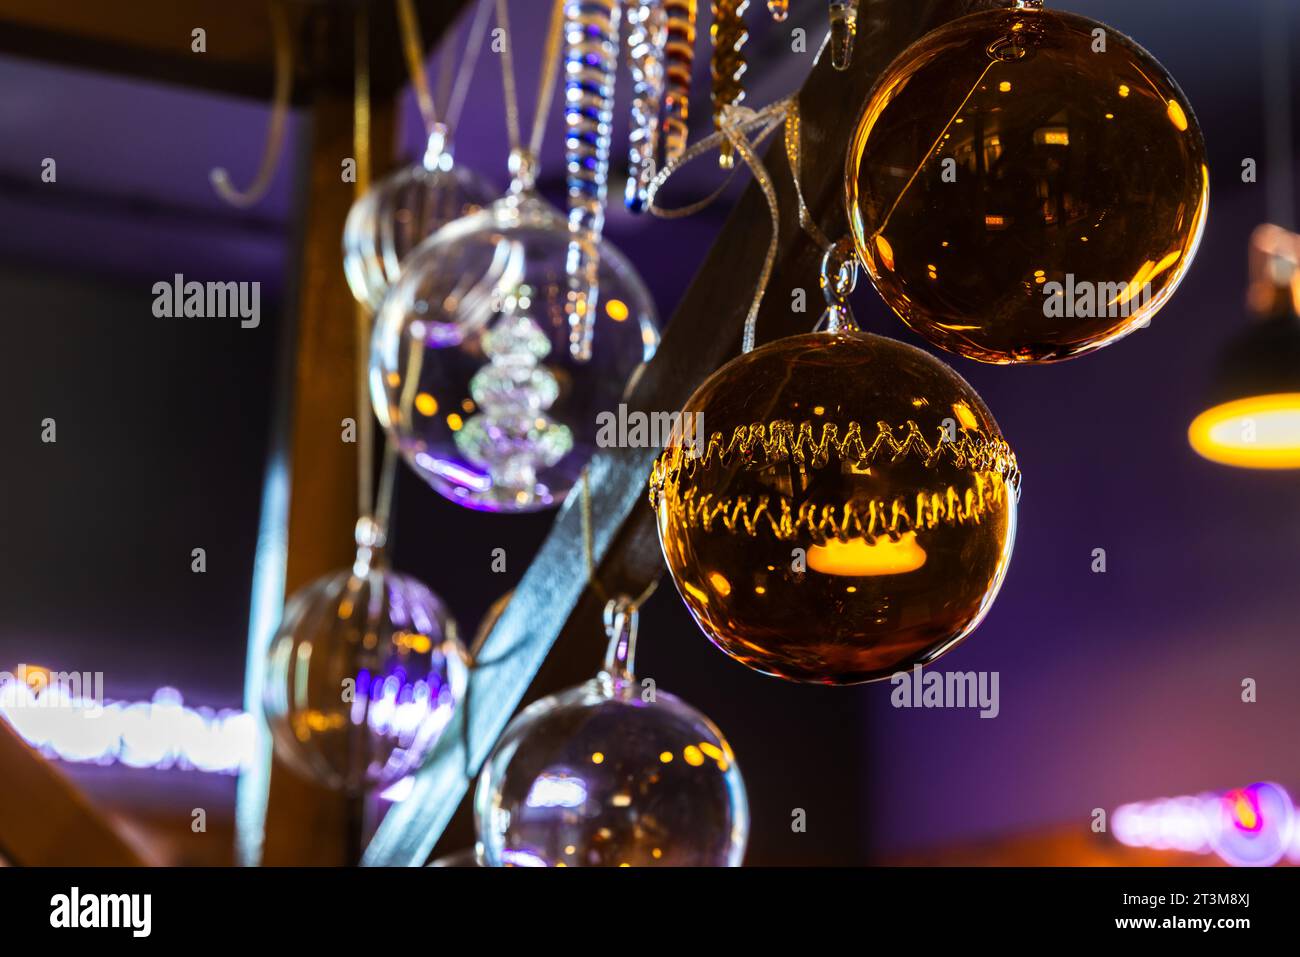 La decorazione natalizia è impreziosita da interni scuri, palline di vetro trasparente colorate Foto Stock